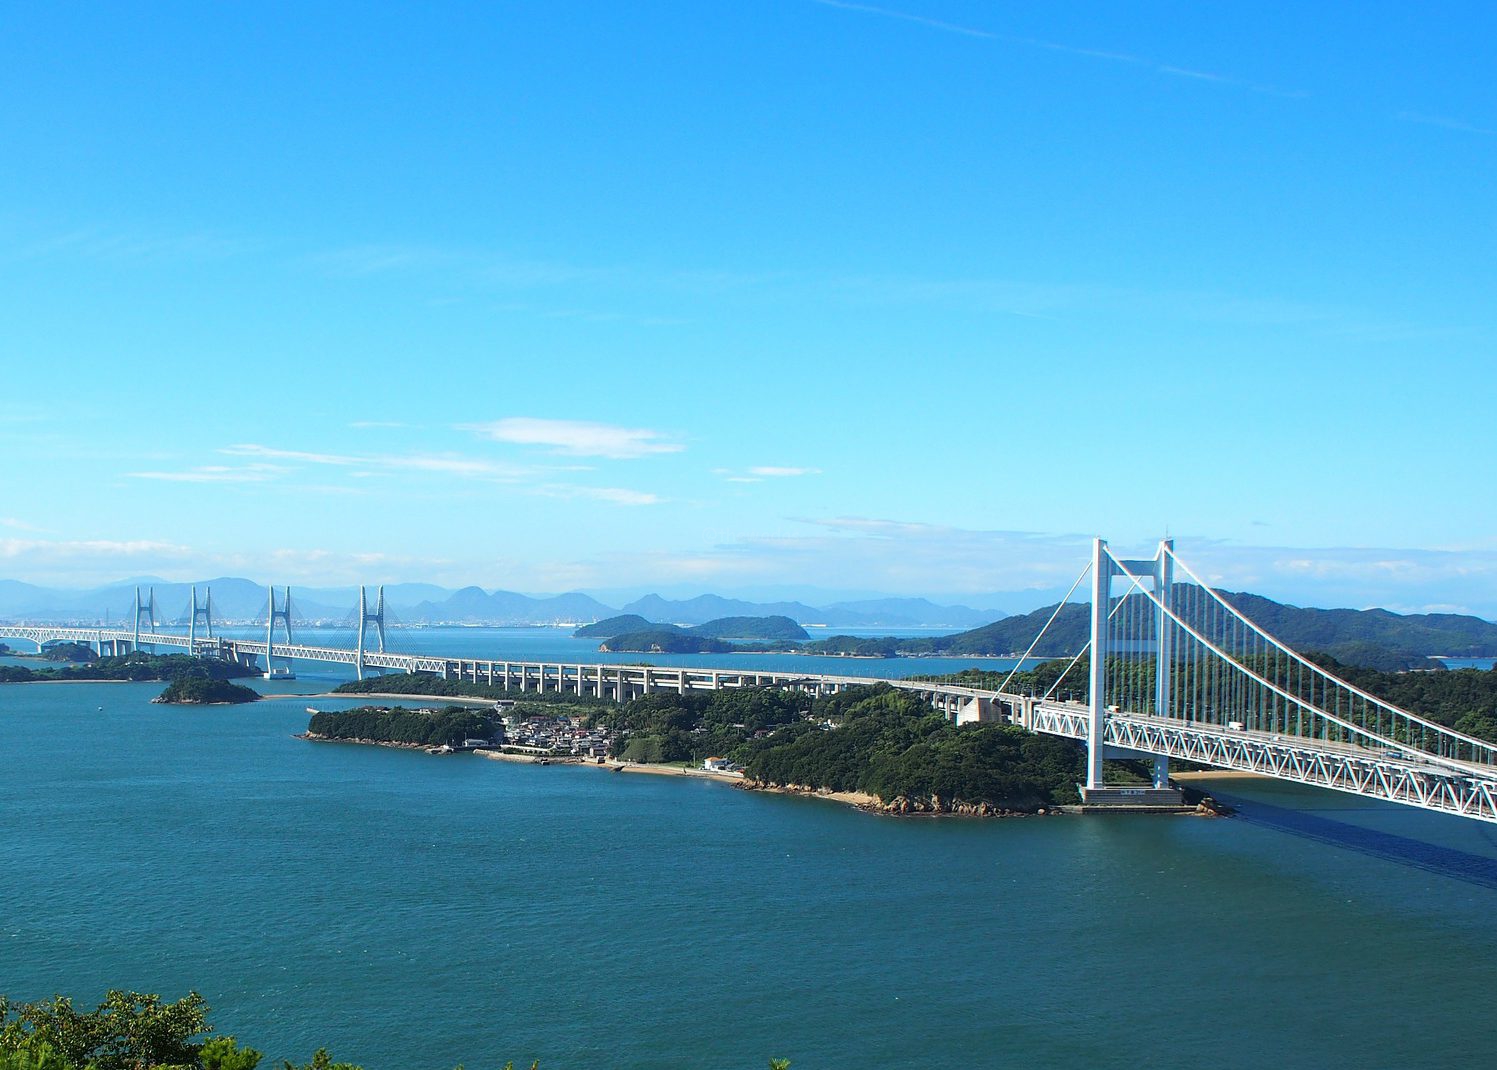 Seto Ohashi Sky Tour Autumn 2016: The Great Seto Bridge